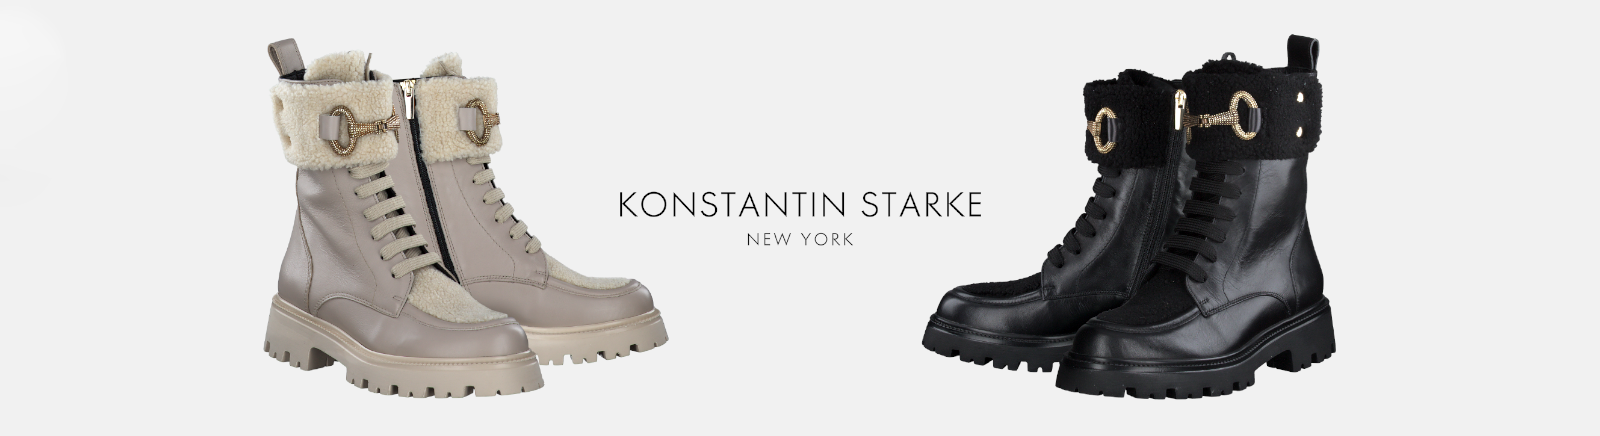 Konstantin Starke Plateau-Stiefeletten für Damen im Online-Shop von GISY kaufen